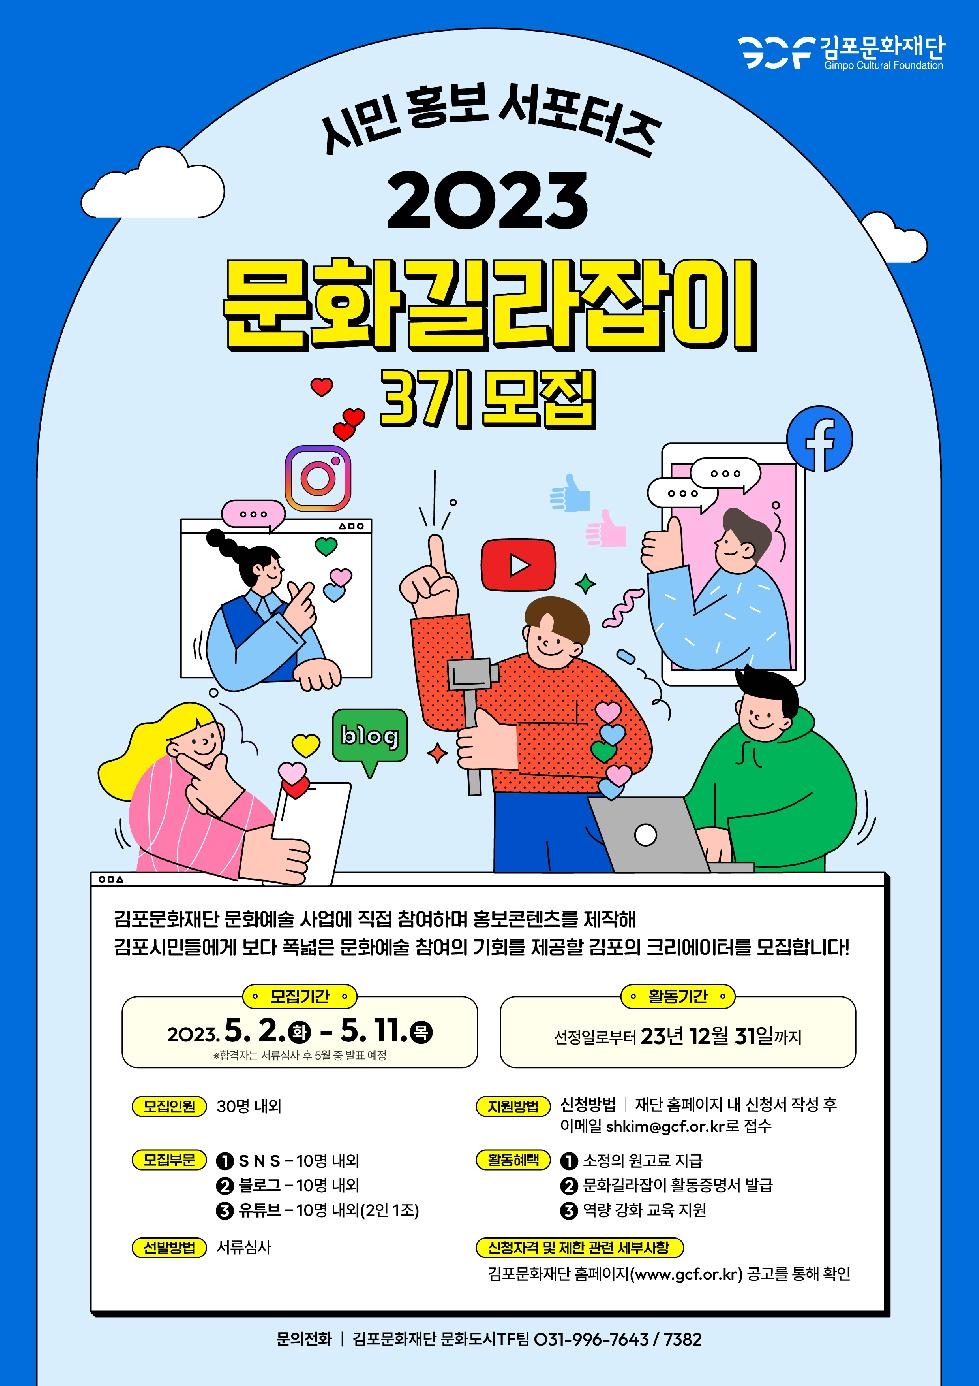 김포문화재단, 2023 시민홍보 서포터즈 ‘문화길라잡이 3기’ 모집